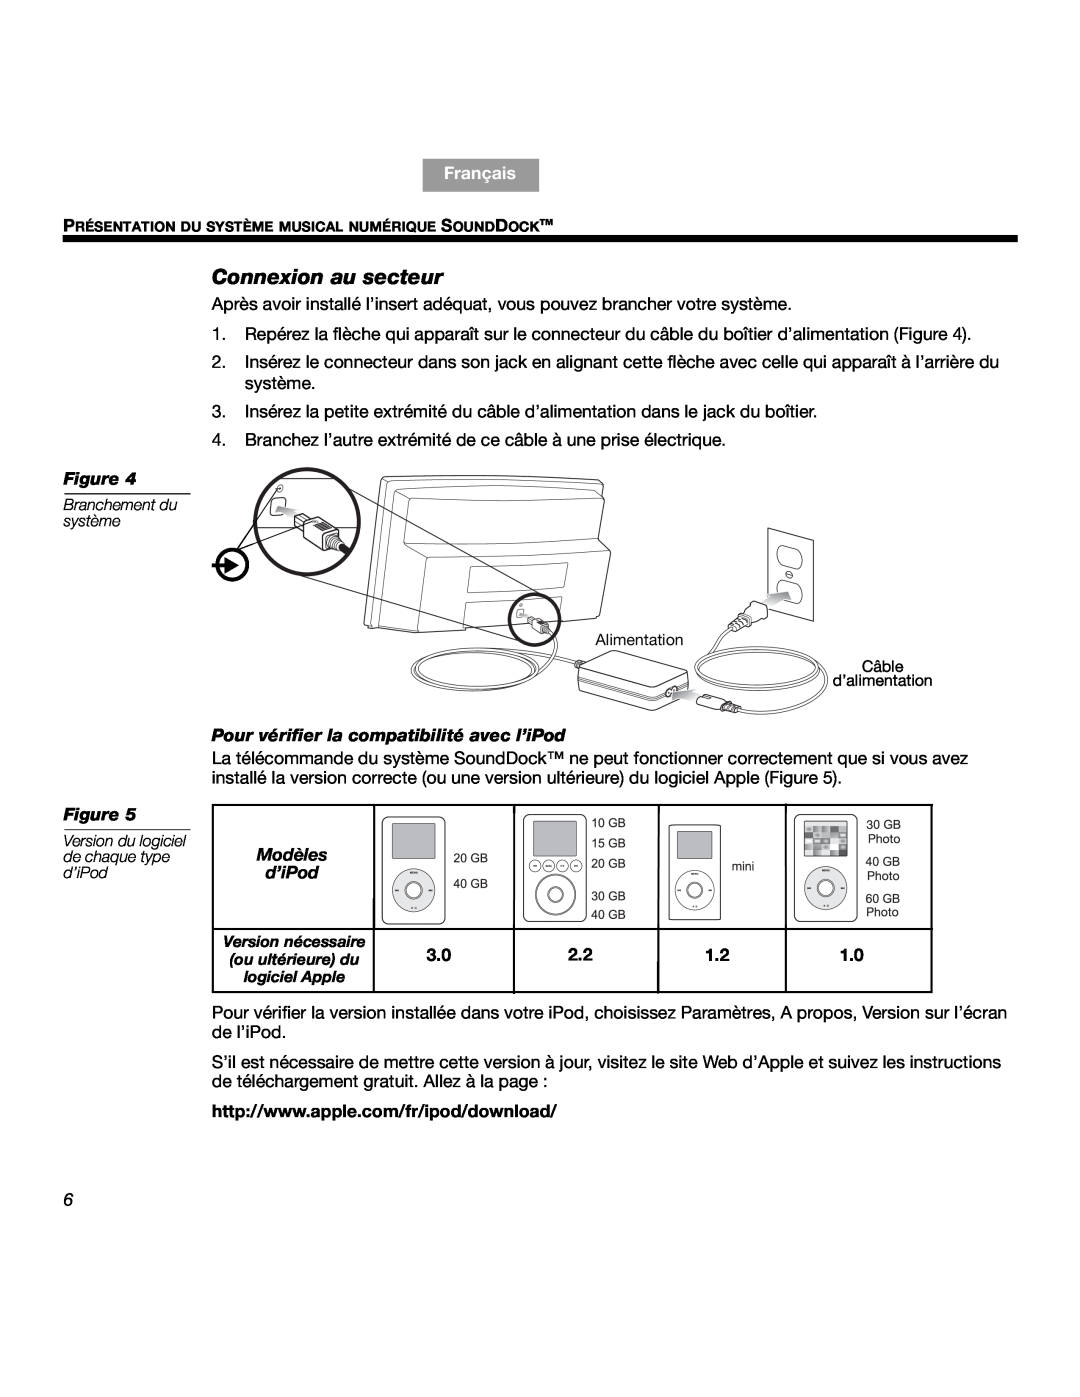 Bose SOUNDDOCKTM manual Connexion au secteur, Pour vérifier la compatibilité avec l’iPod, Modèles d’iPod, Français, Figure 